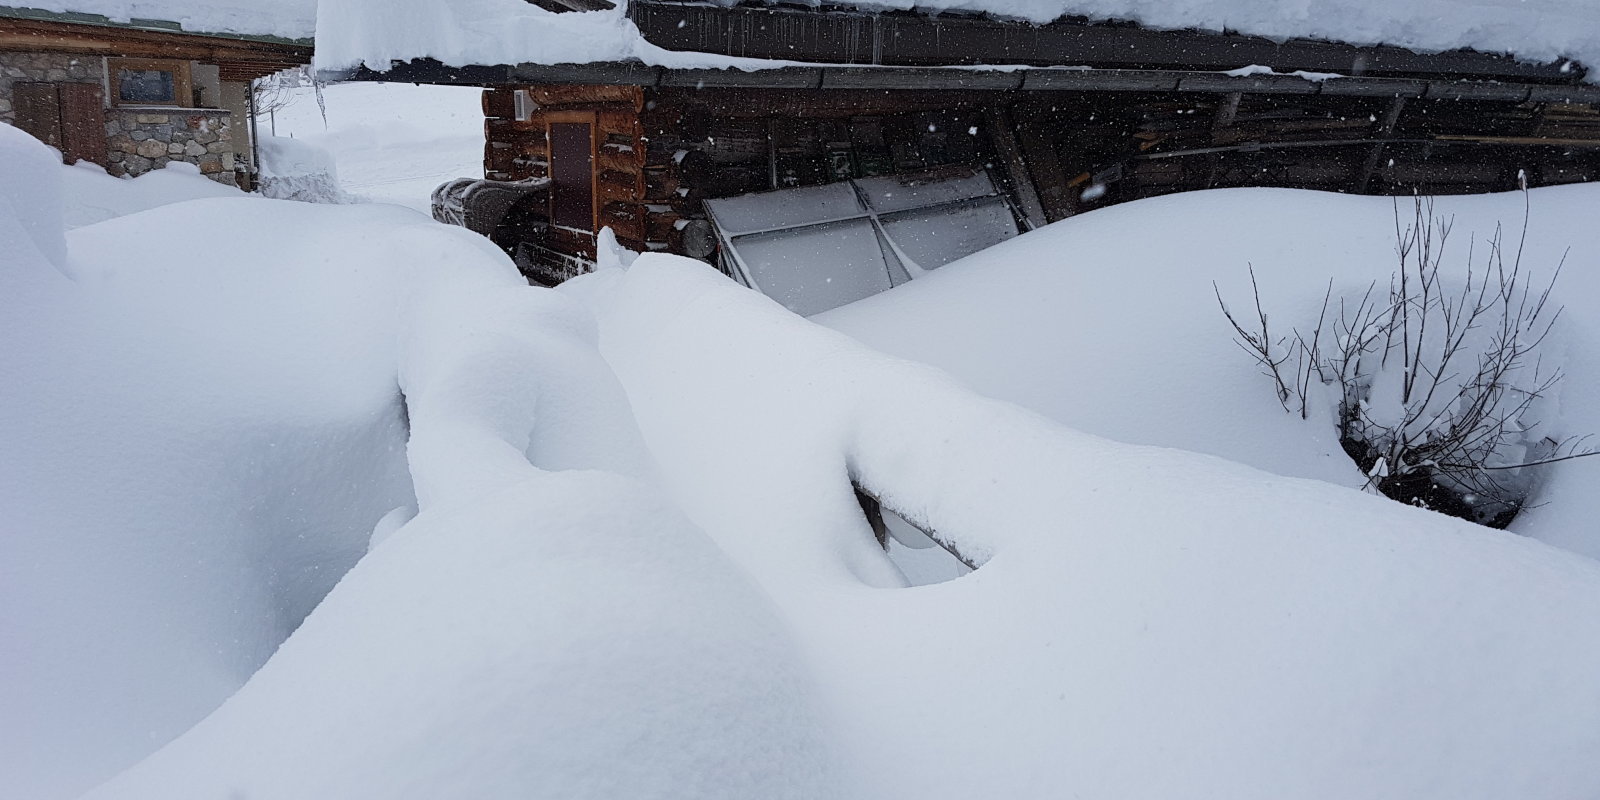 Ennyi hóval indult a 2019-es év az Alpokban. Sok mindent át kellett gondolni az idei első freeride csúszások után. | Fotó: golo